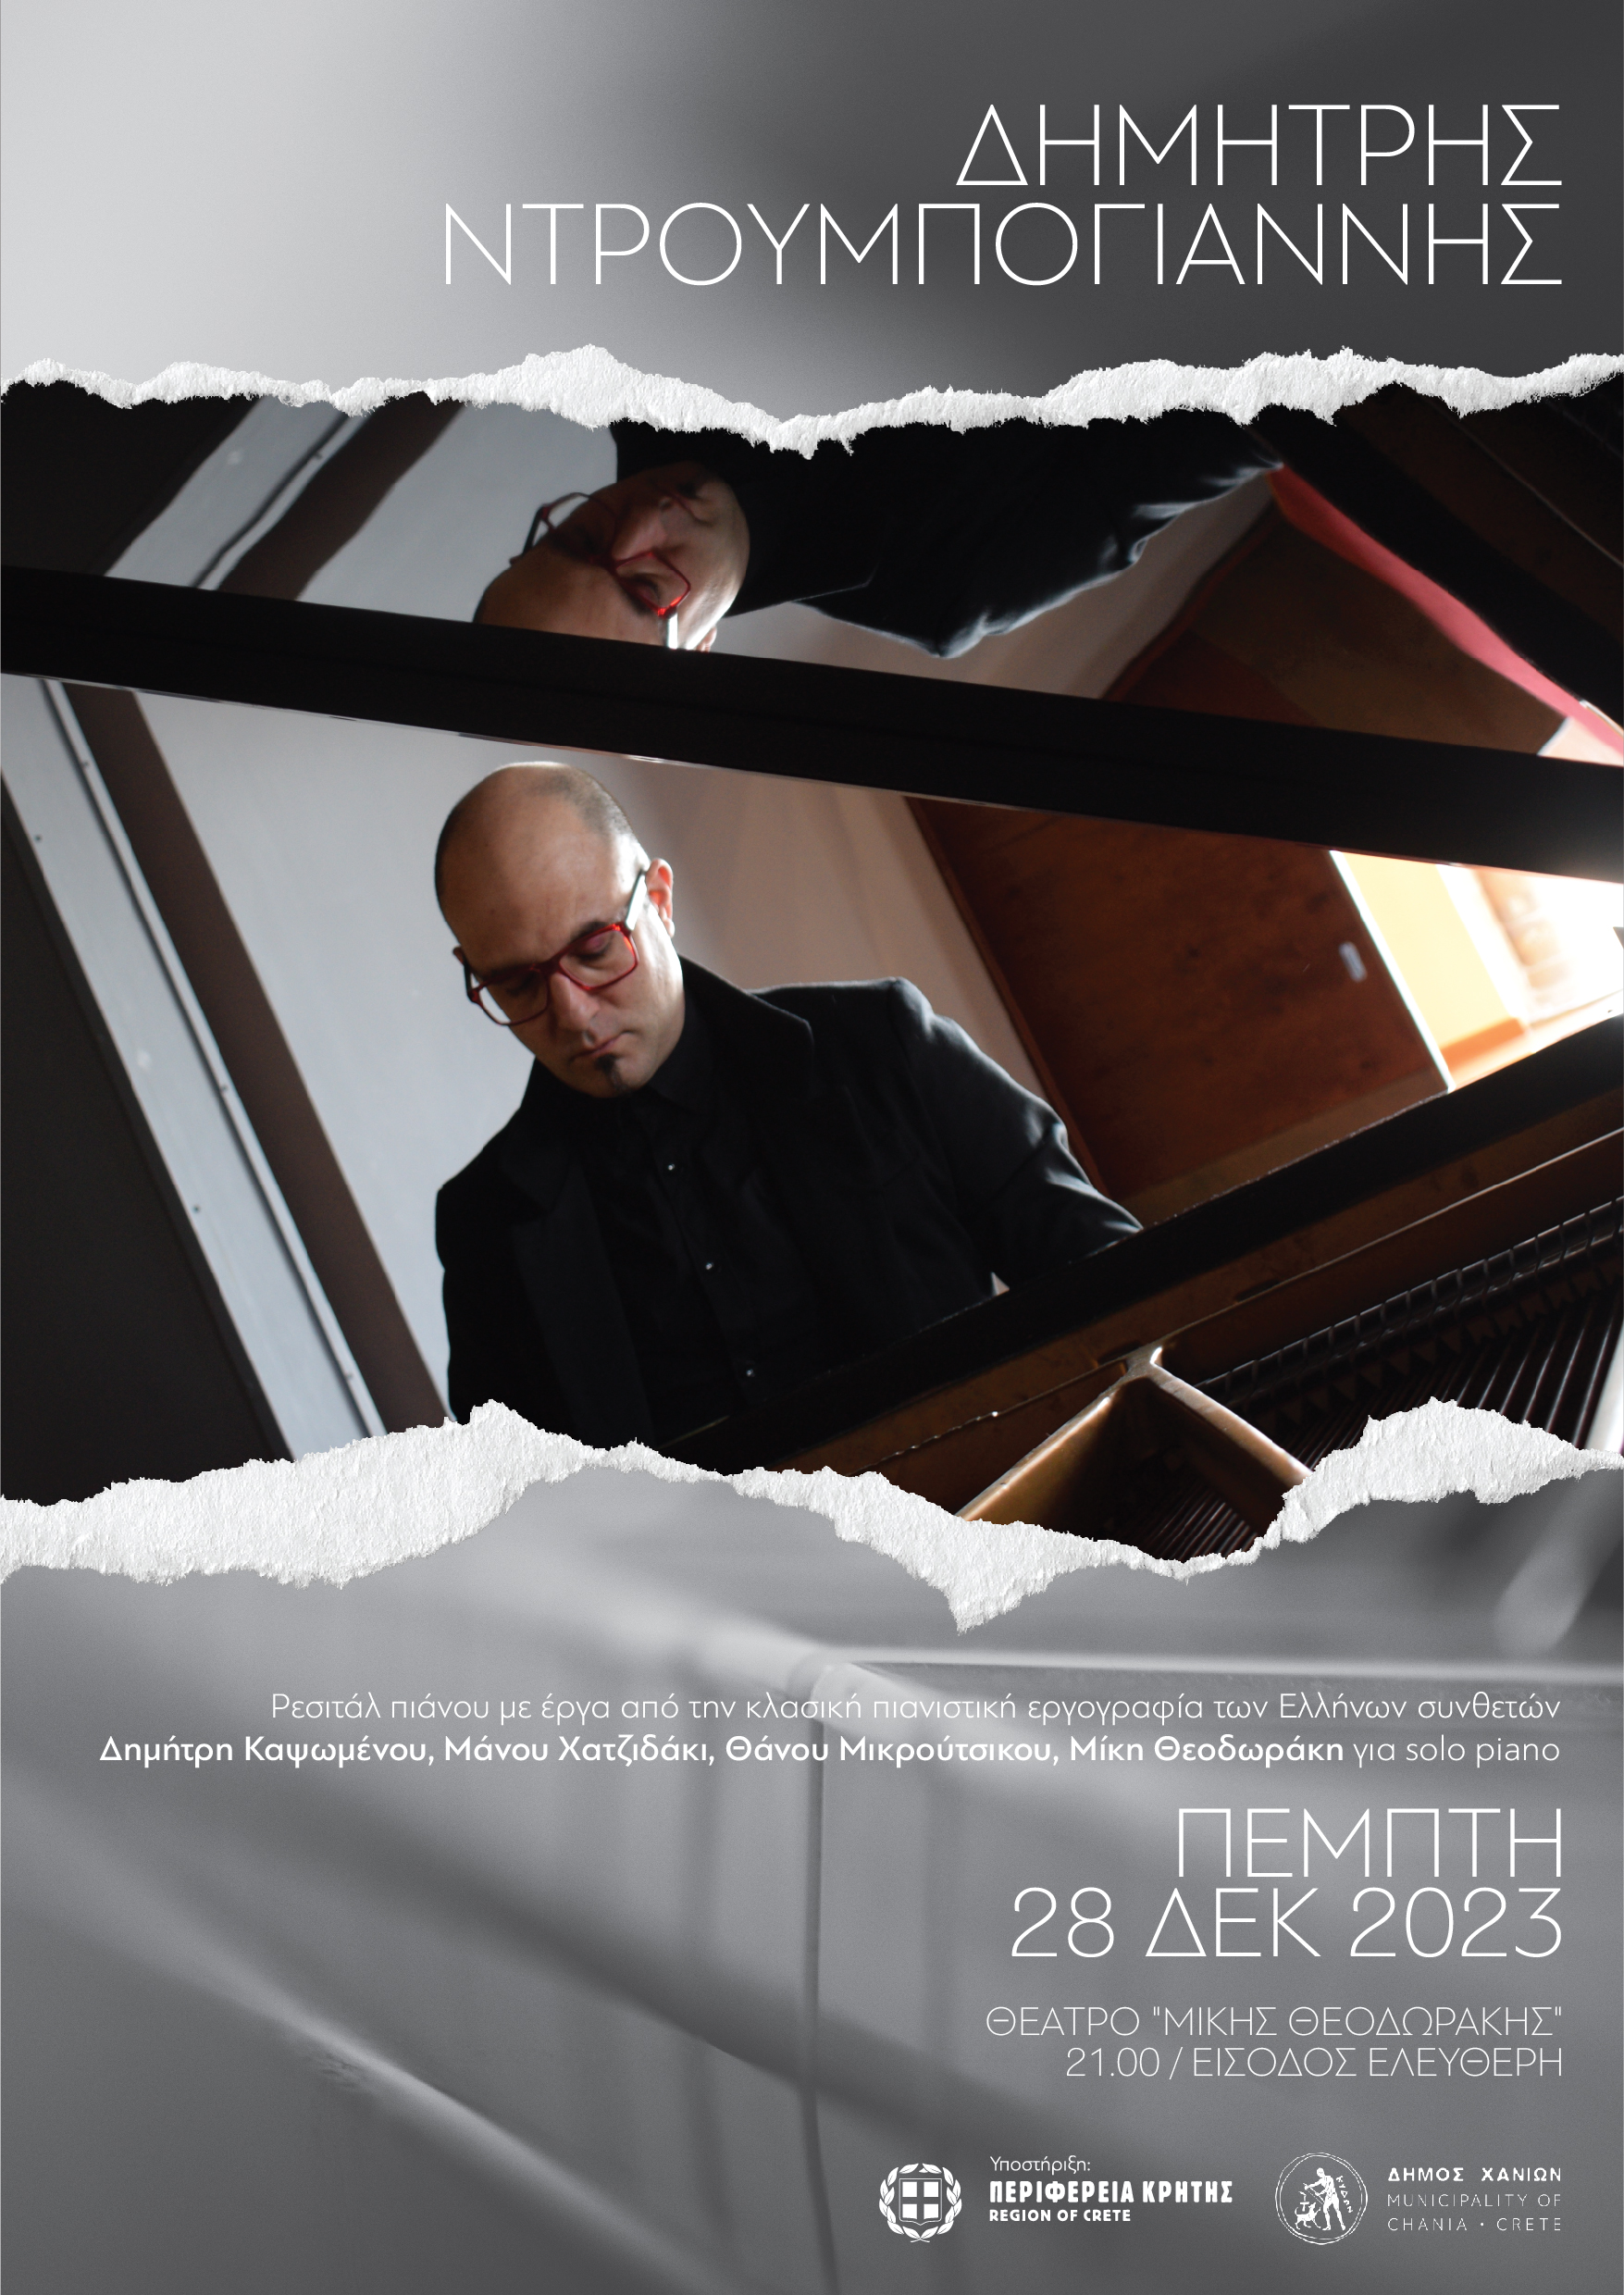 Ρεσιτάλ πιάνου του Δημήτρη Ντρουμπογιάννη – Πέμπτη 28 Δεκεμβρίου 2023